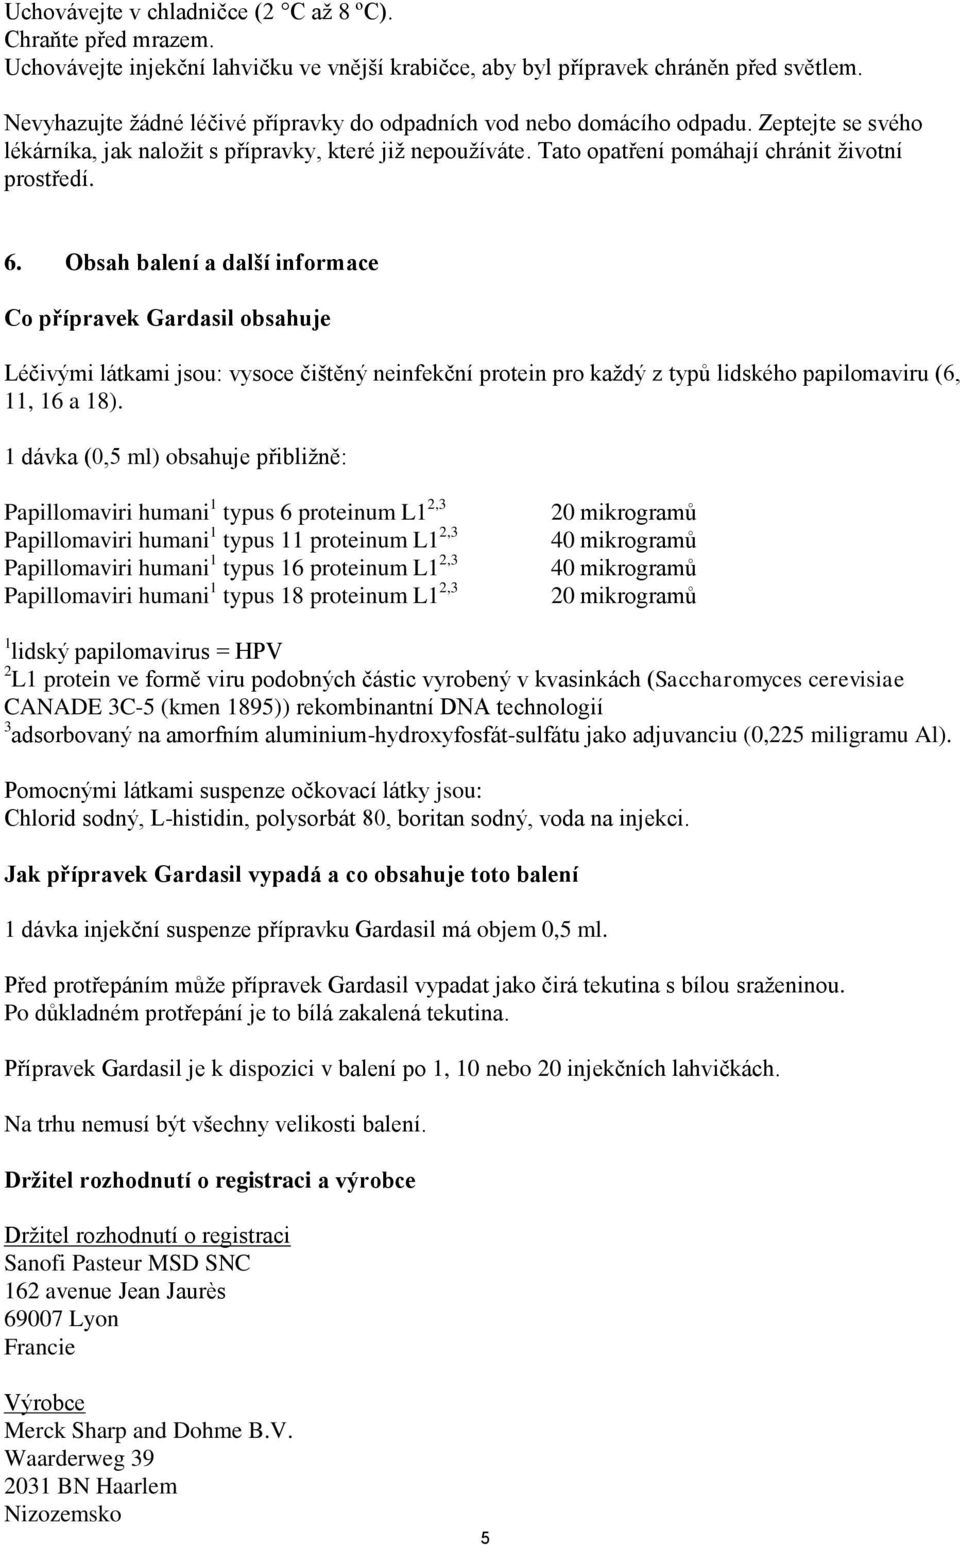 6. Obsah balení a další informace Co přípravek Gardasil obsahuje Léčivými látkami jsou: vysoce čištěný neinfekční protein pro každý z typů lidského papilomaviru (6, 11, 16 a 18).